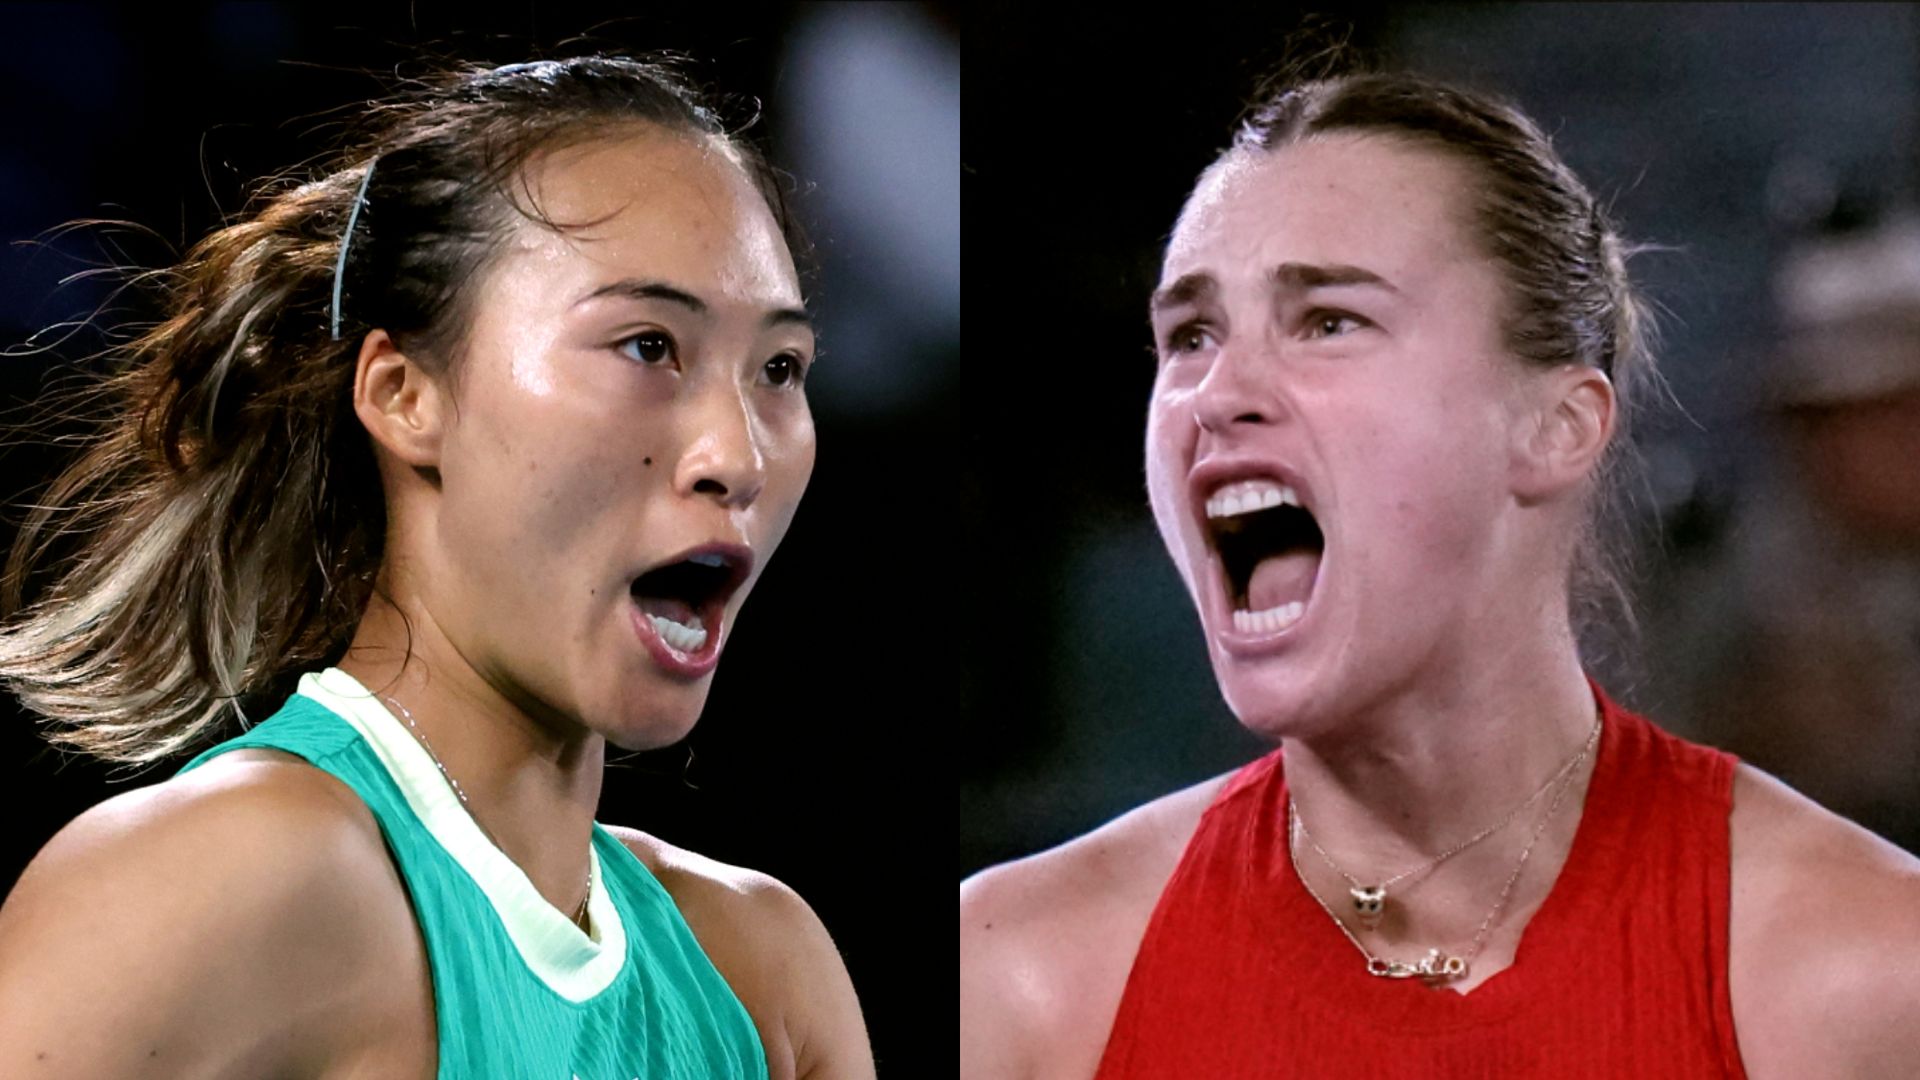 Australian Open: Recap as Zheng makes first major final against Sabalenka